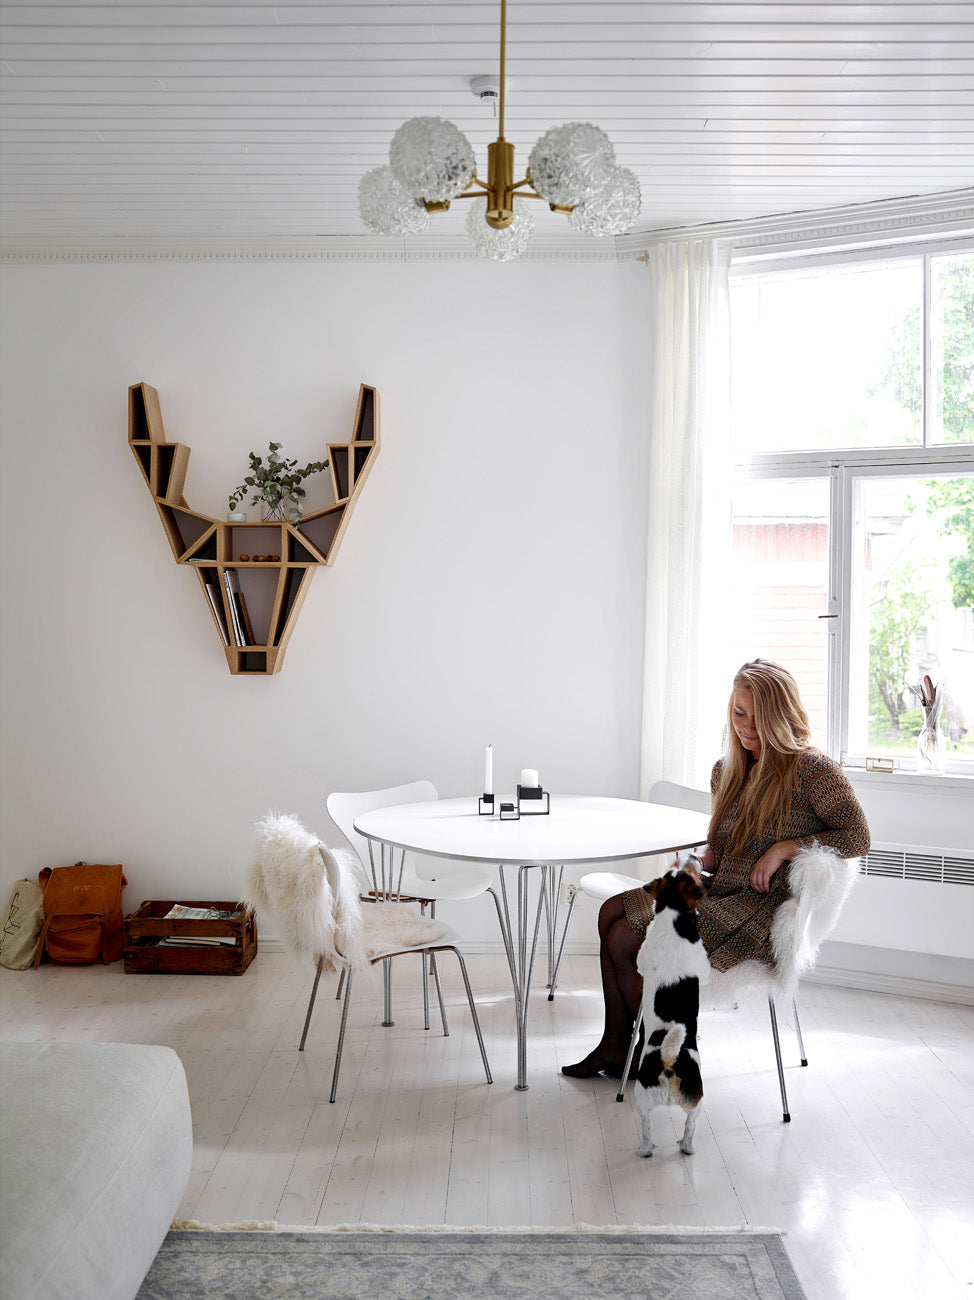 BEdesign-Bette-Eklund-Designer-Home-Photo-credit-Krista-Keltanen